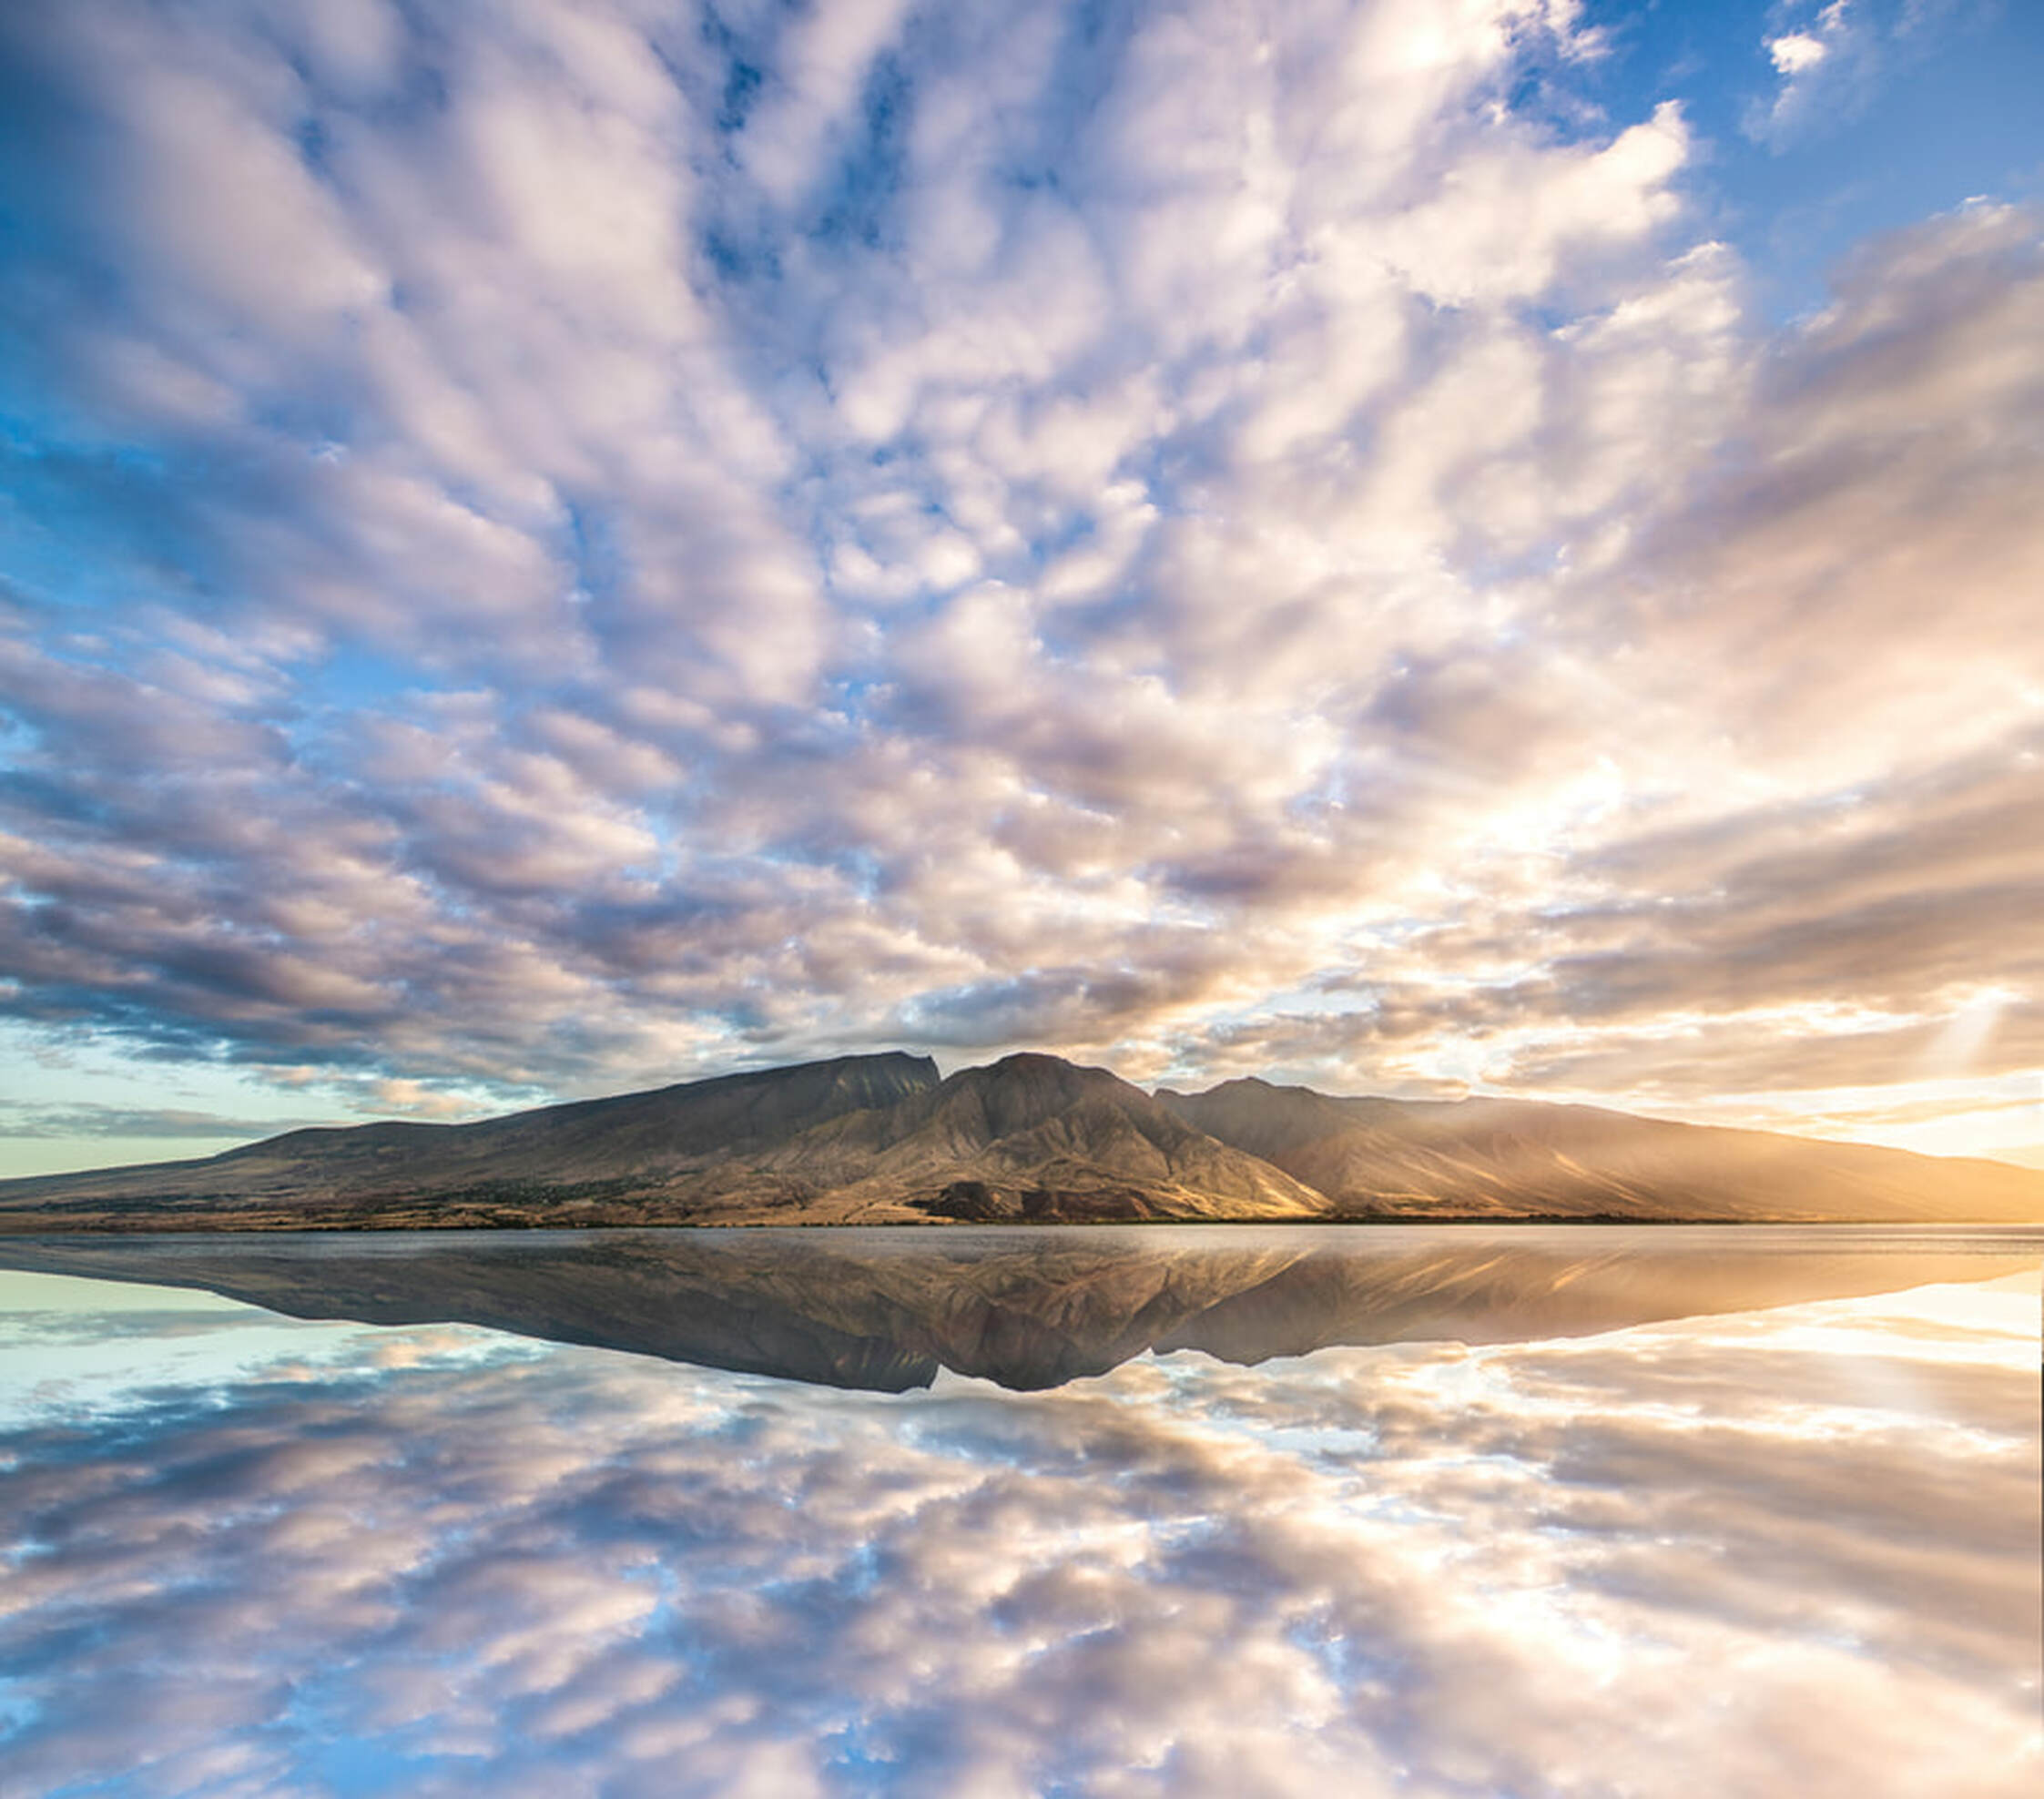 Picture, maui, reflection, sunrise, sun, mountain, volcano, clouds, cloudscape, landscape, photography, art